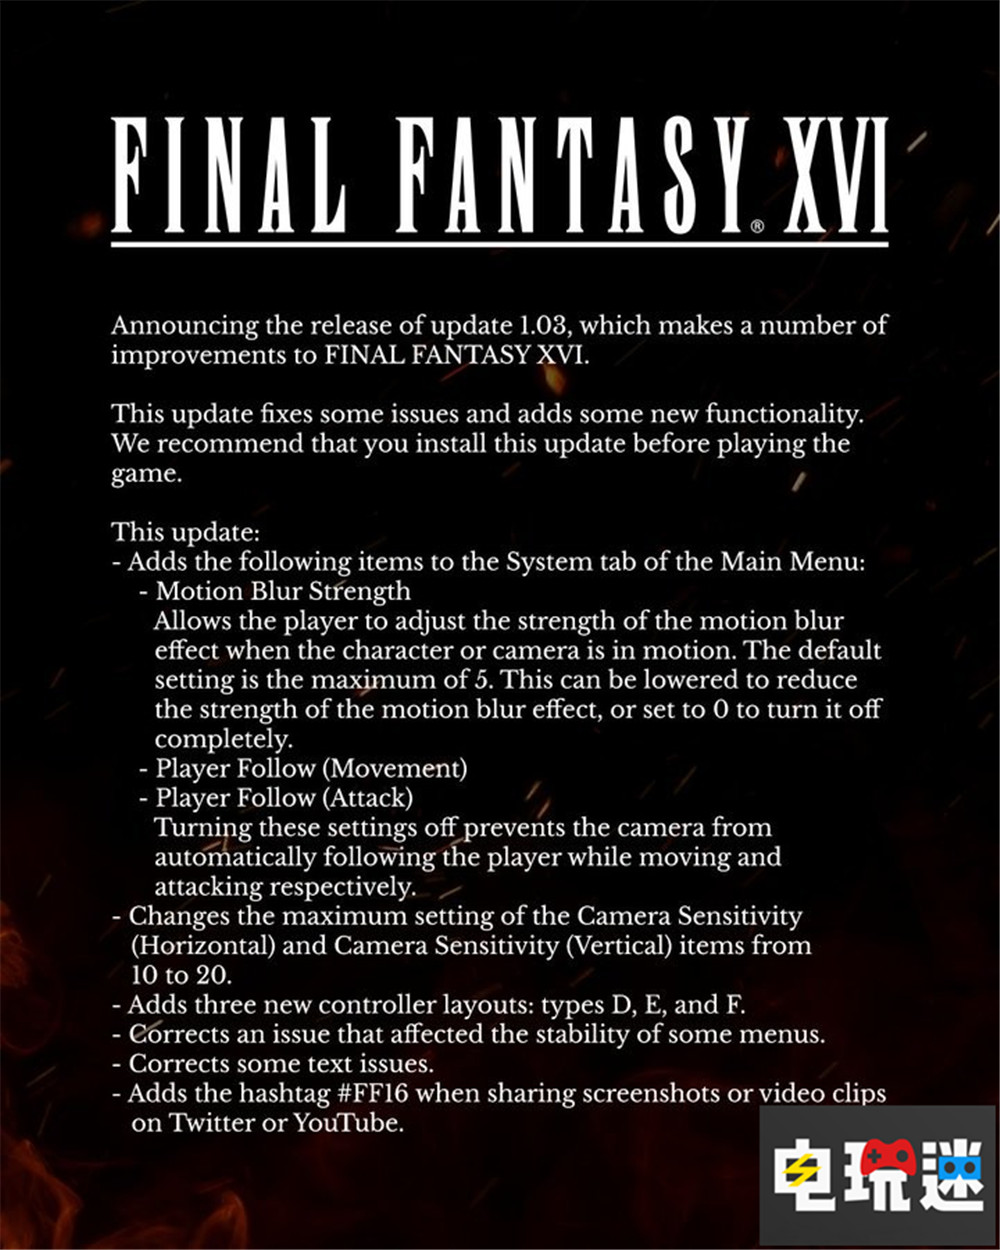 《最终幻想16》更新1.03 终于能关动态模糊了 动态模糊 PS5 RPG 角色扮演游戏 单机游戏 SE FF16 最终幻想16 索尼PS  第2张